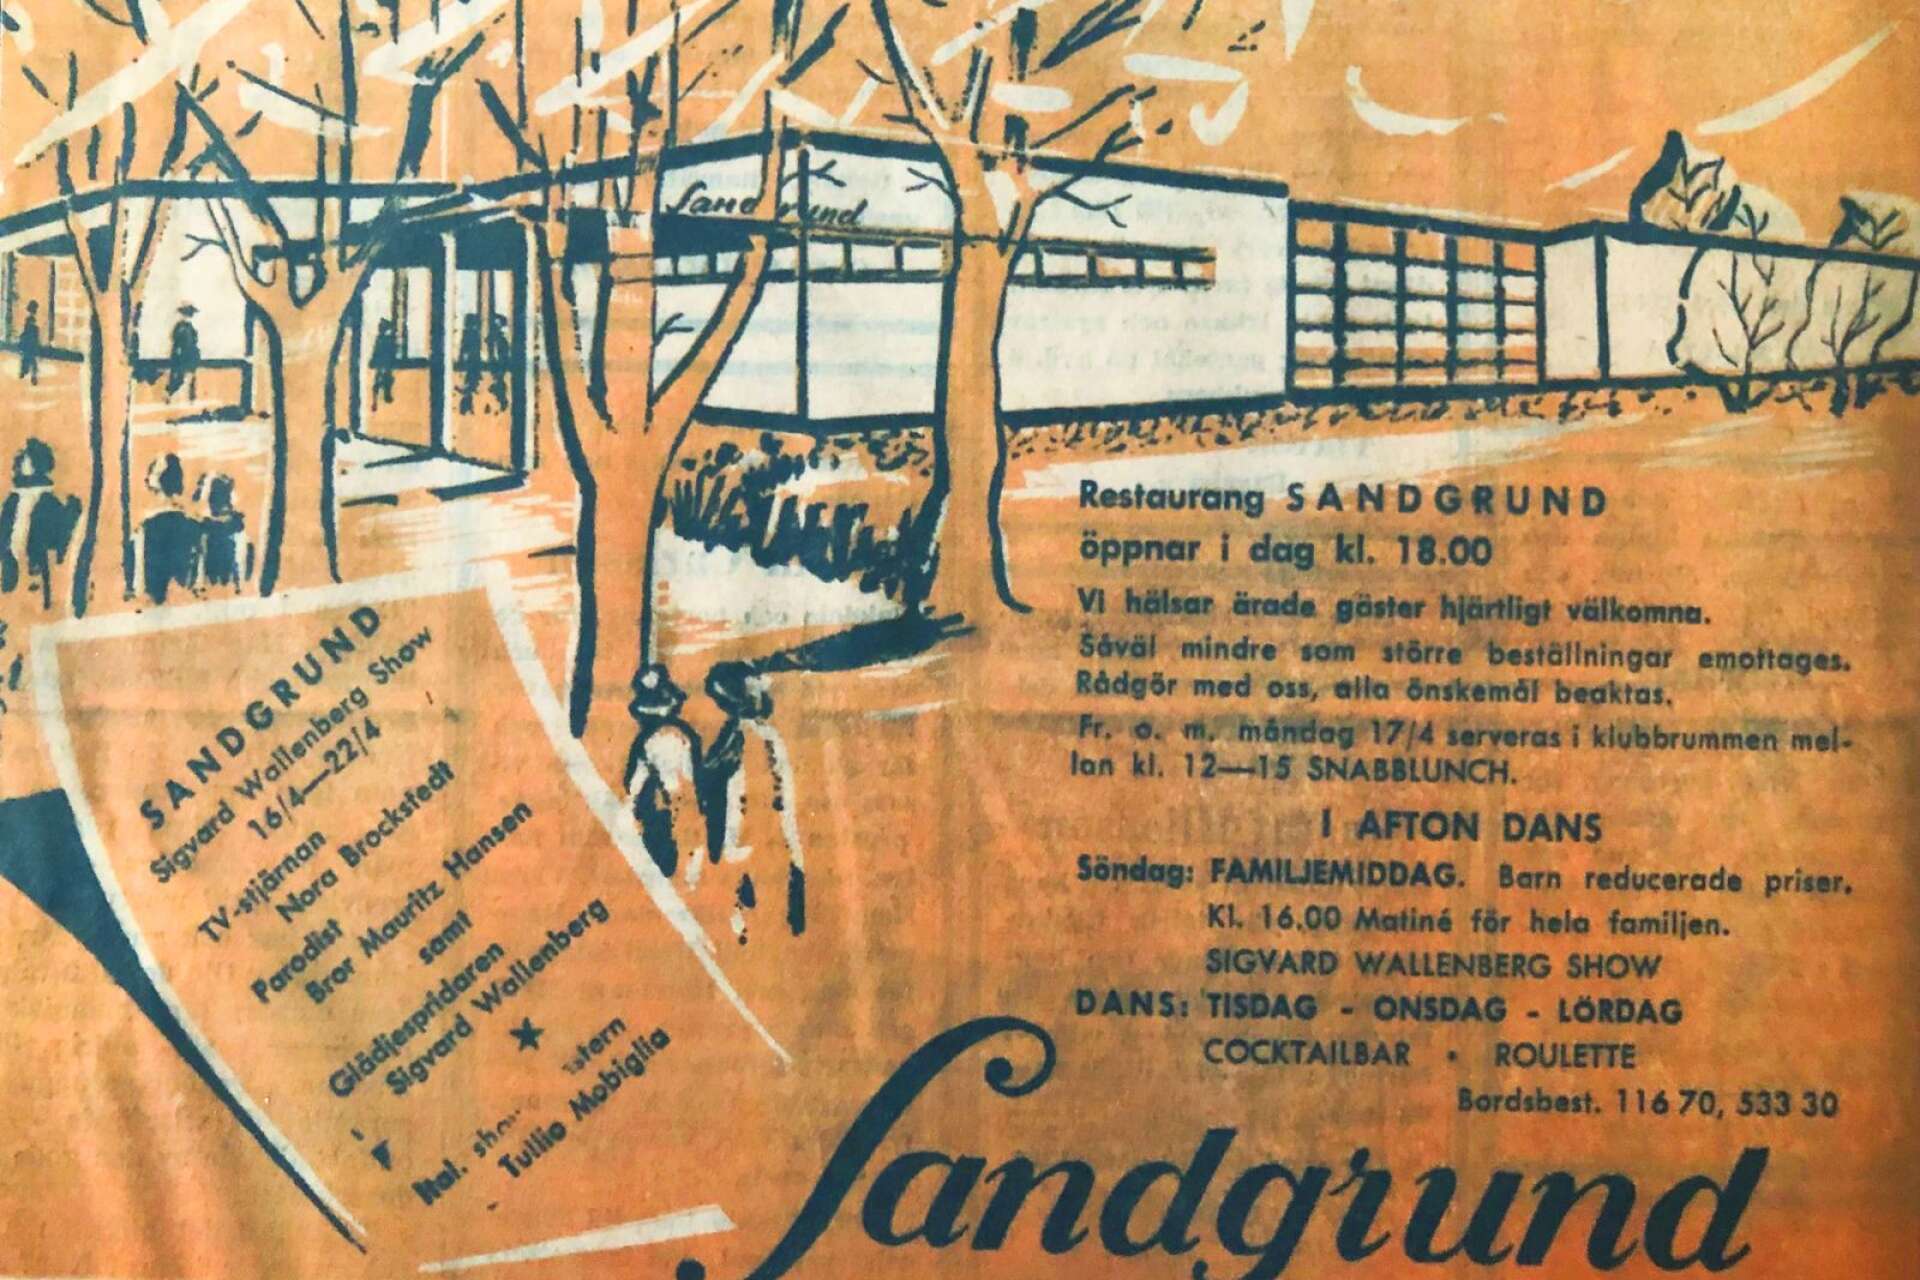 En annons i tidningen om Sandgrund.